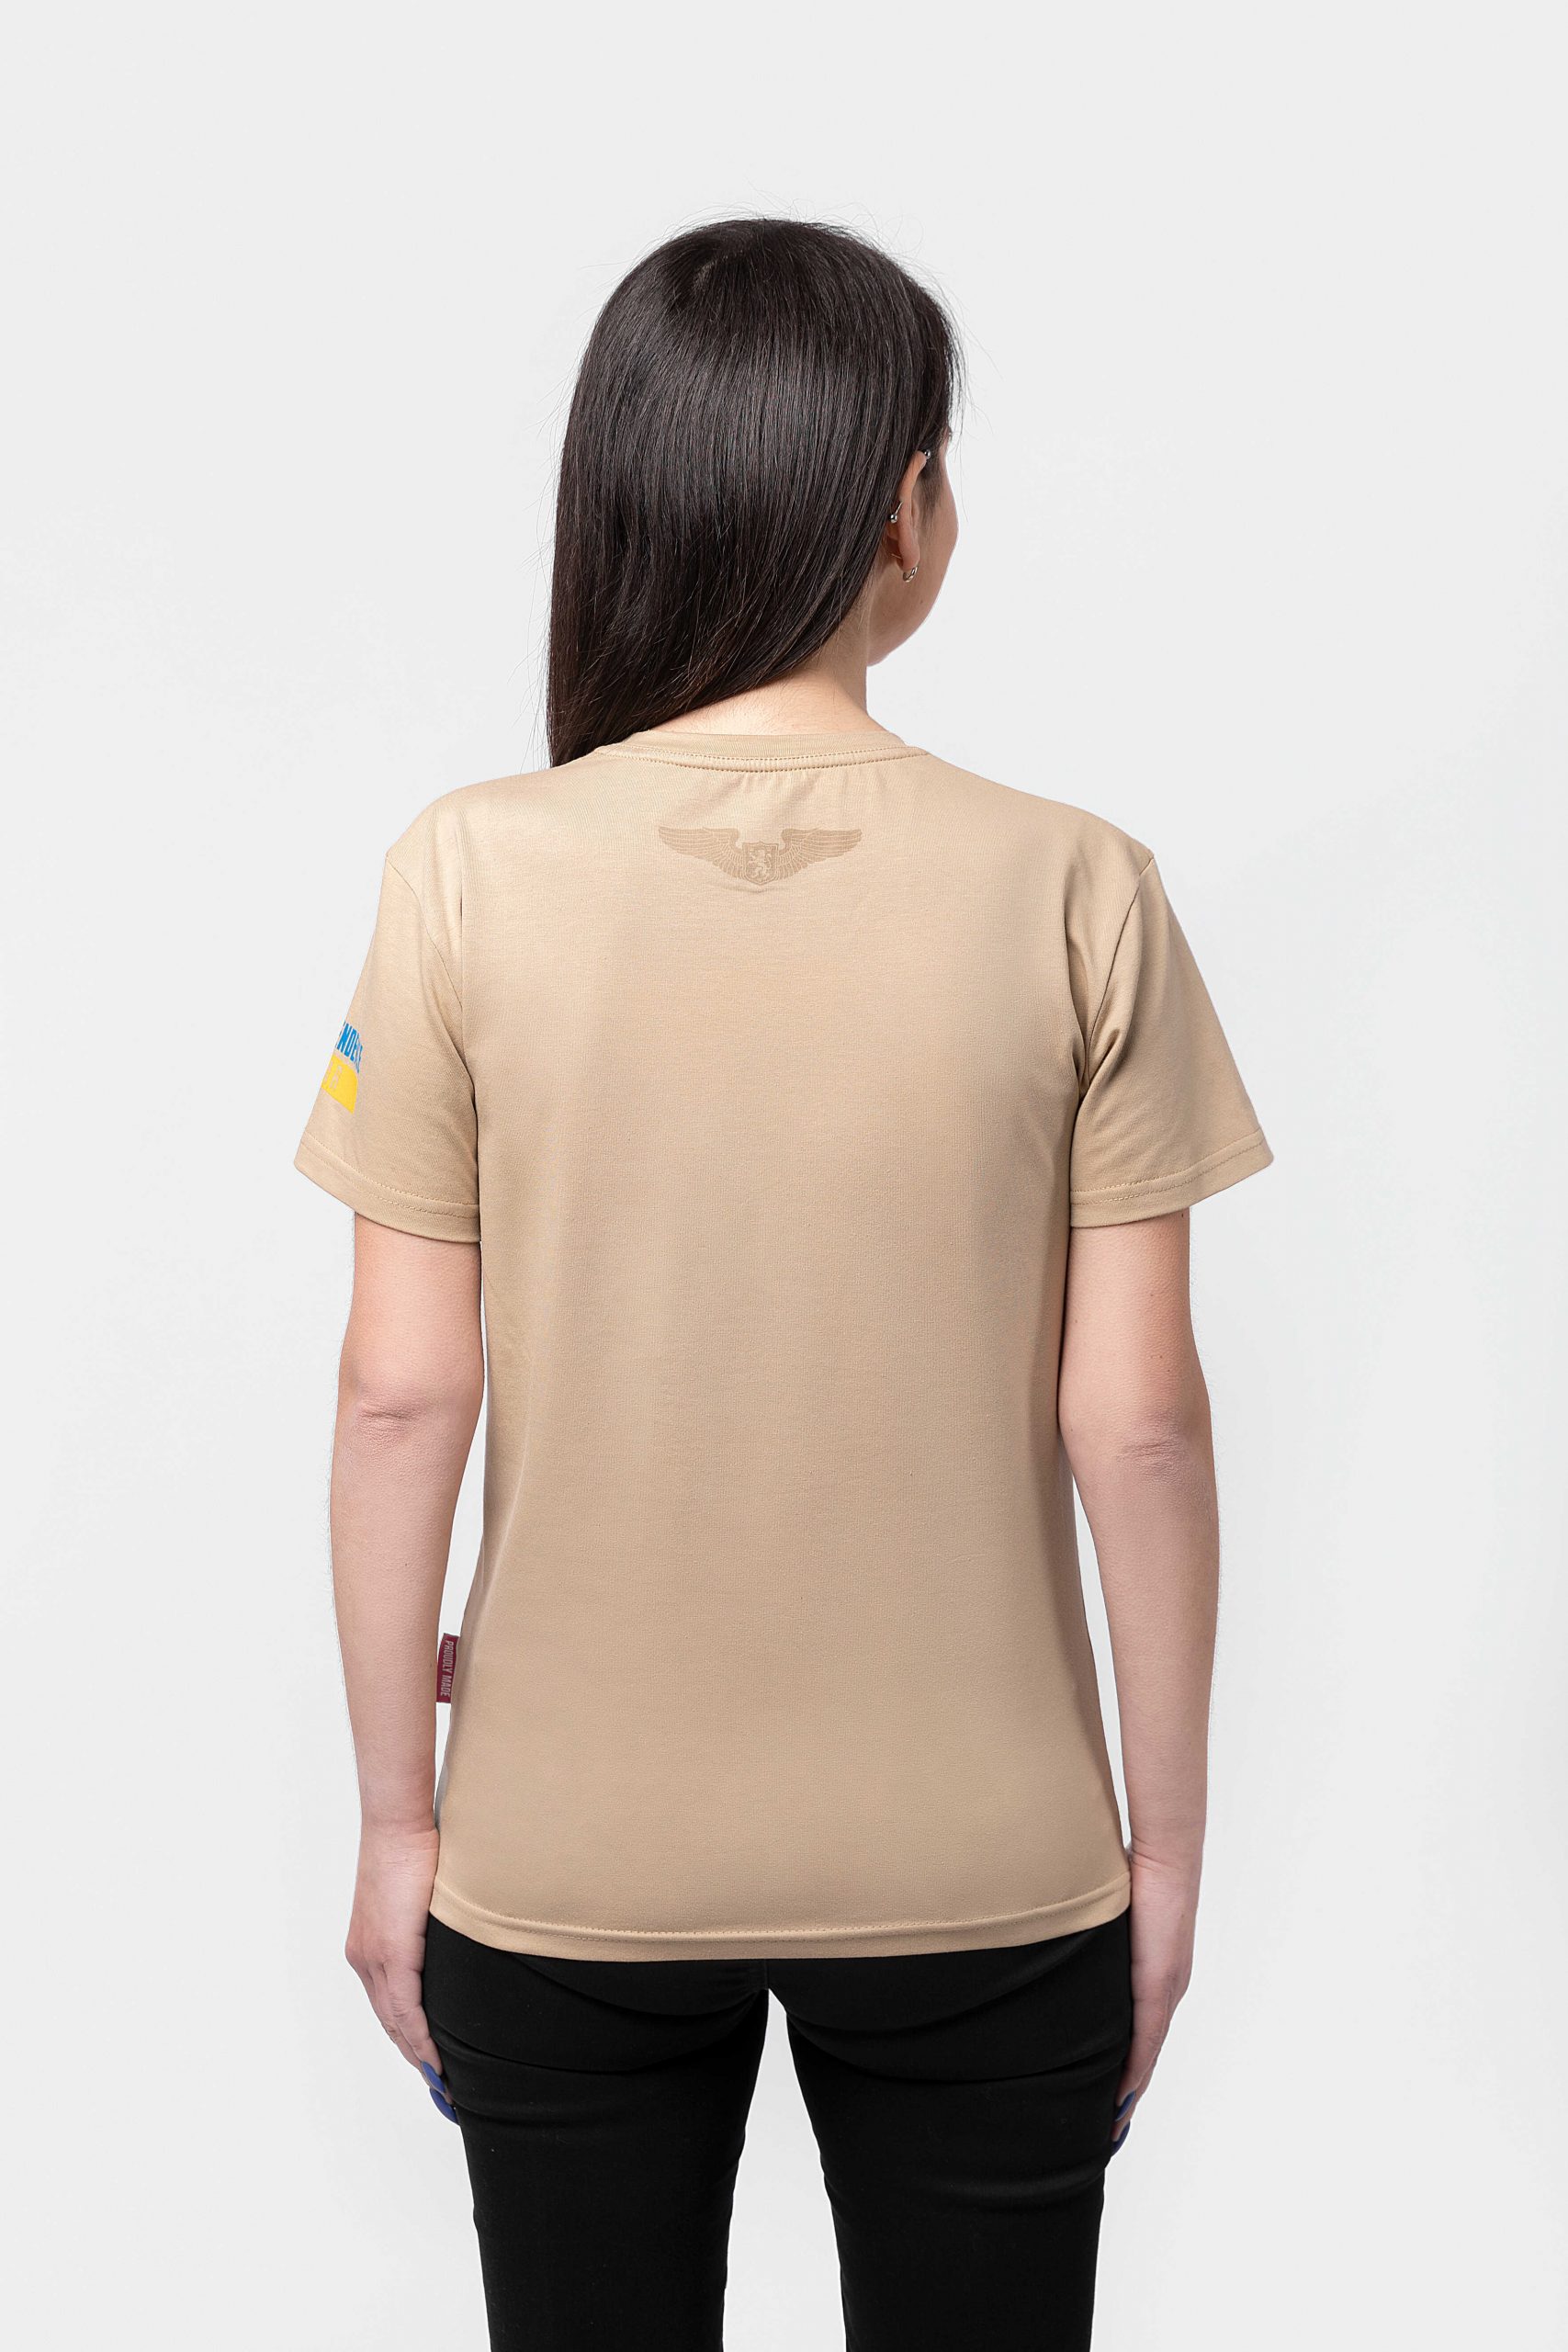 Women's T-Shirt Symarhl. Color sand. 1.